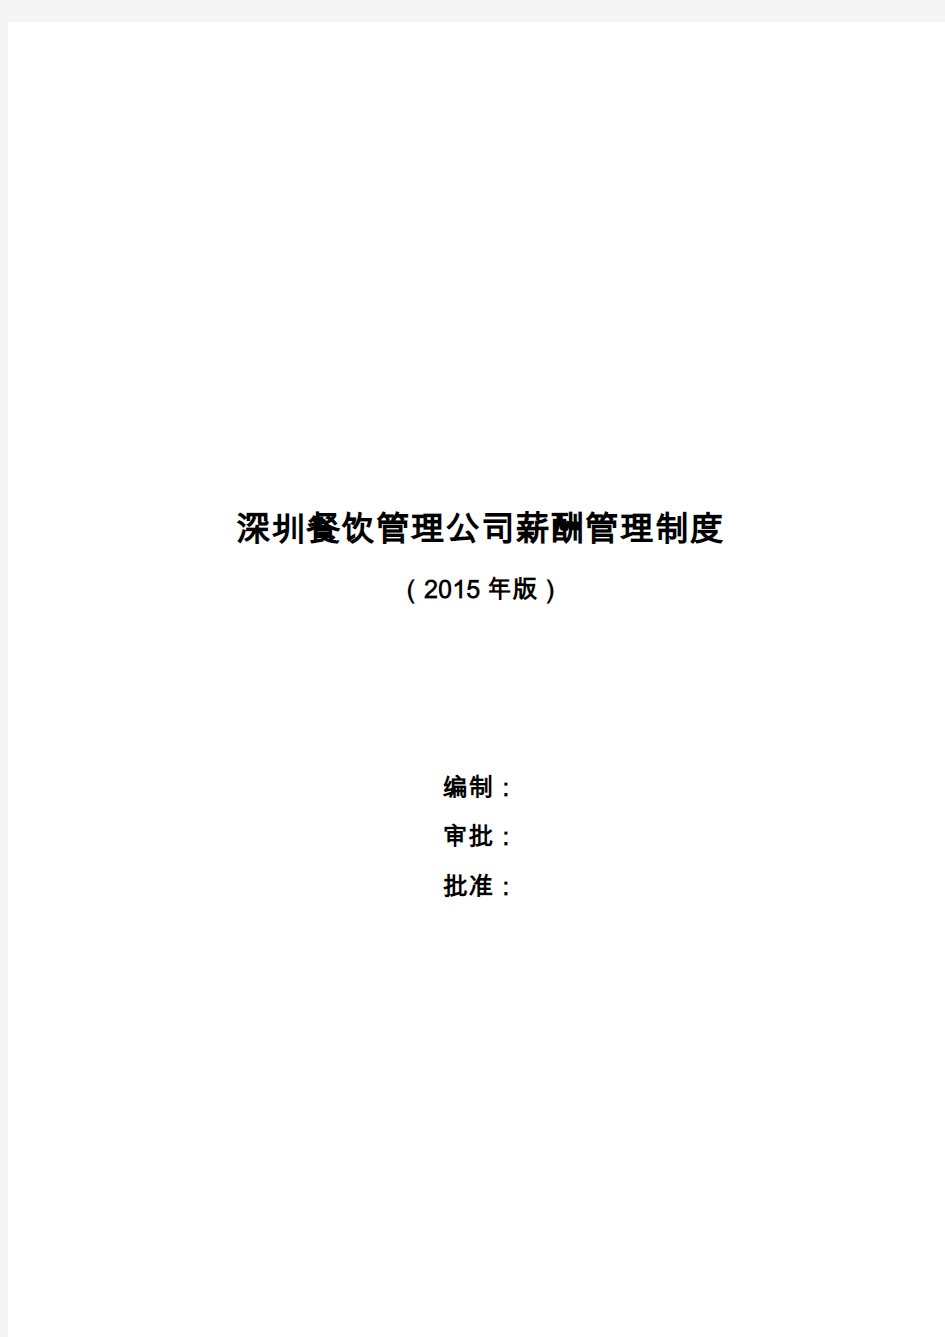 深圳餐饮管理公司薪酬管理制度(2015年版)